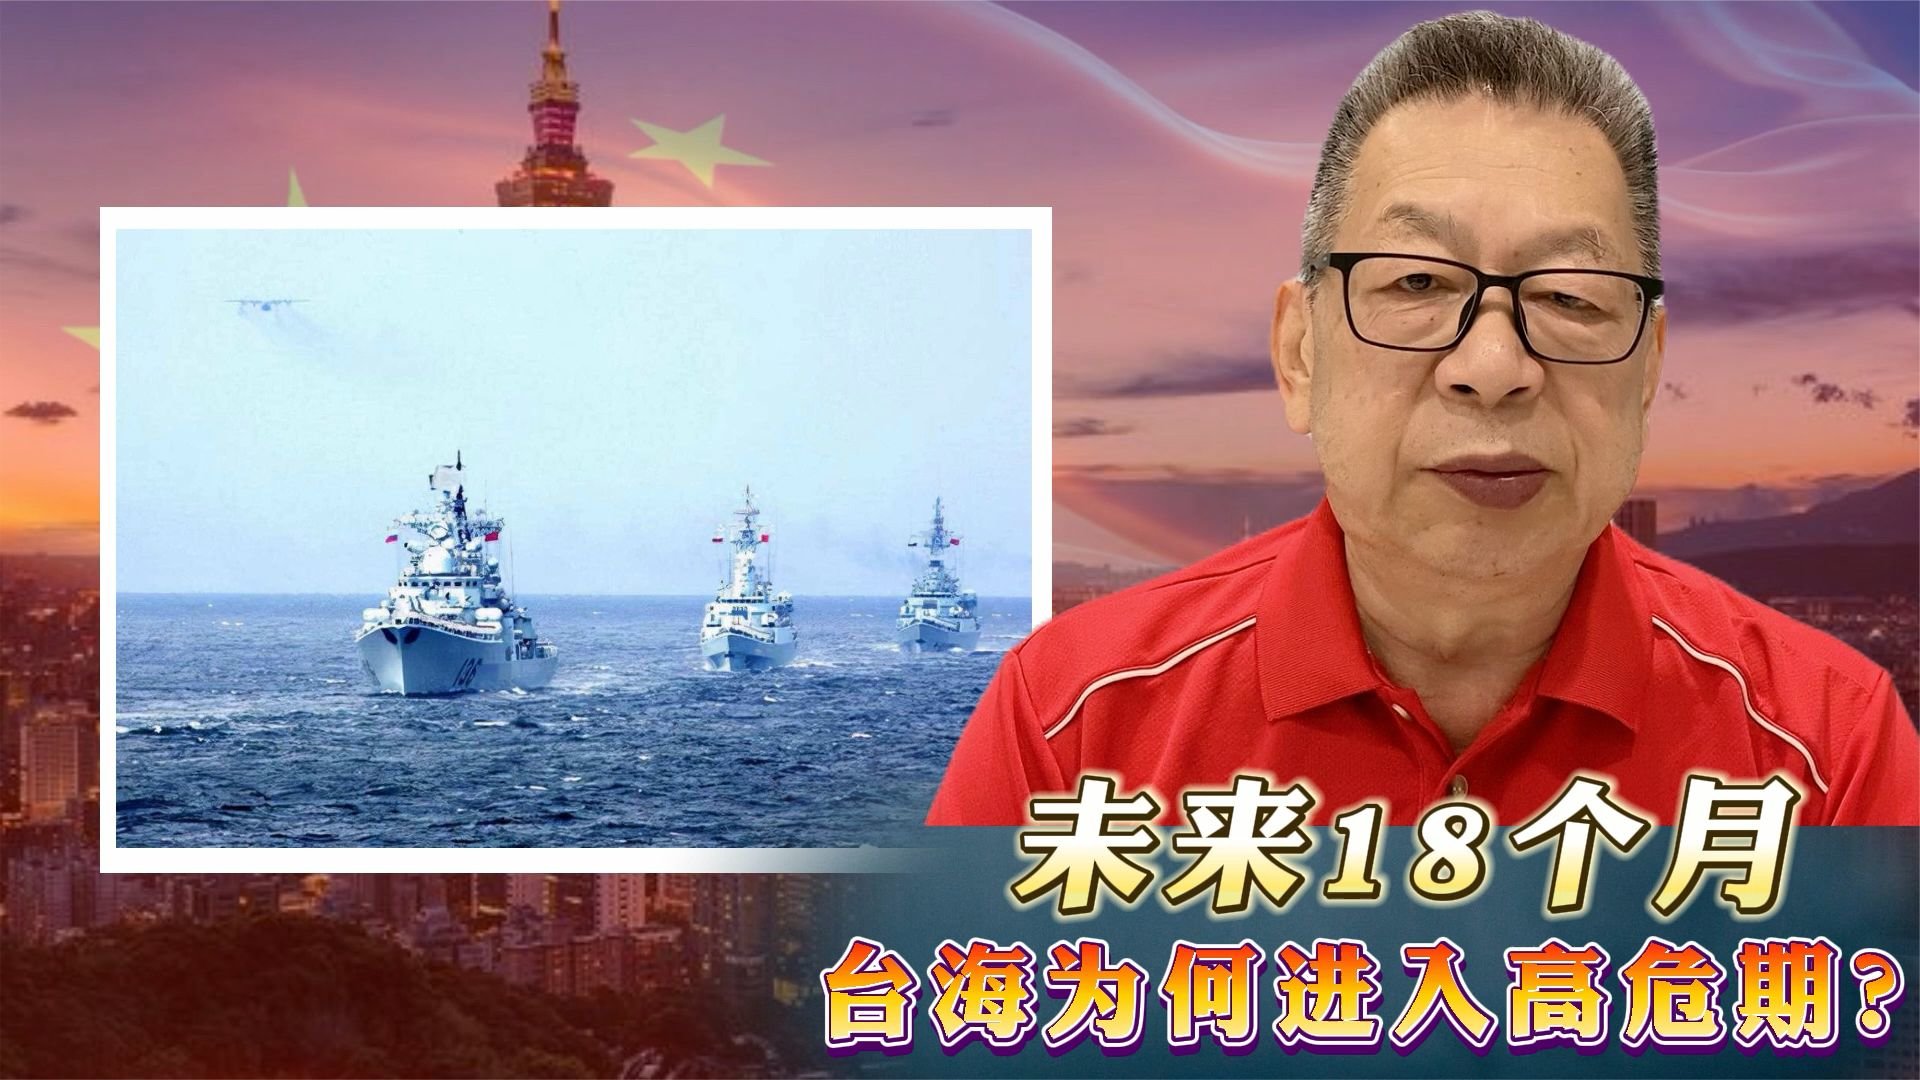 美海军驱逐舰正在穿越台湾海峡 EP-3E提供情报支持_美海军驱逐舰穿越台湾海峡_拉尔夫·约翰逊_Ralph